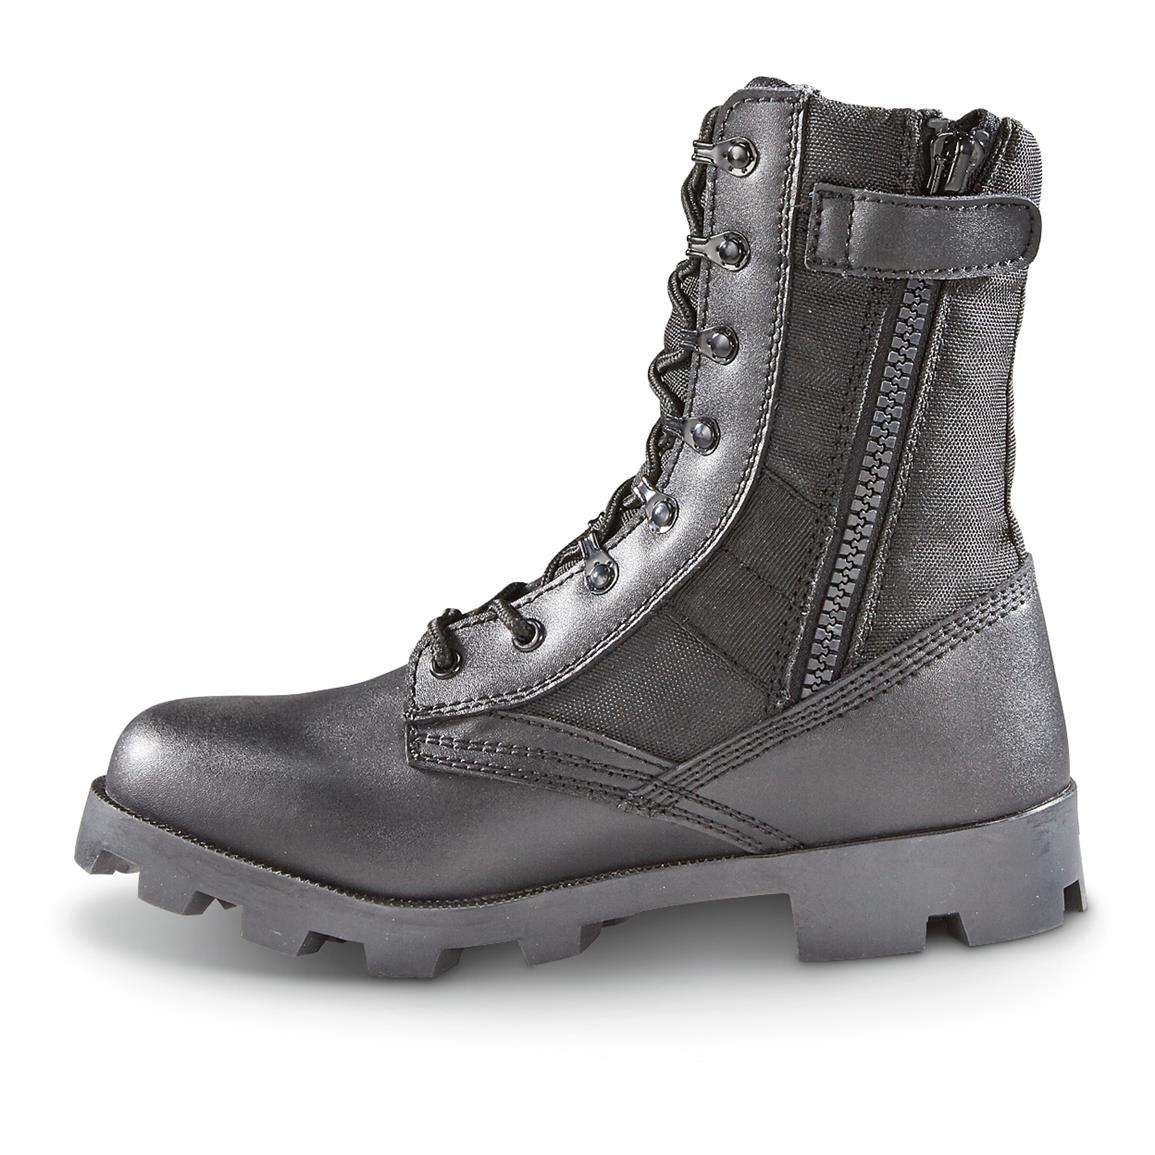 Blackrock Men's Side Zip Jungle Boots - 662987, Combat & Tactical ...